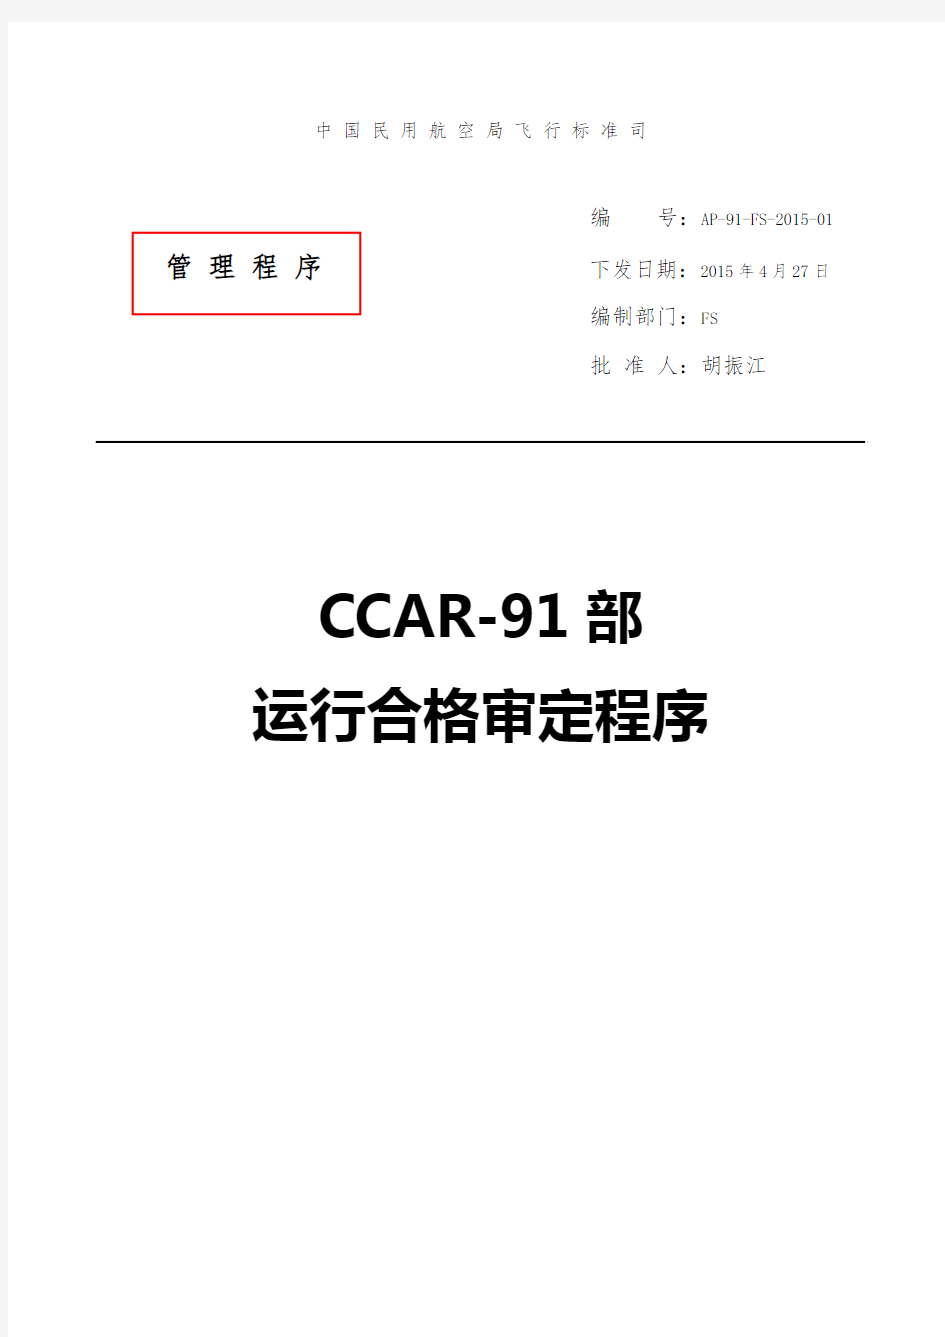 AP-91-FS-2015-01 CCAR-91部运行合格审定程序